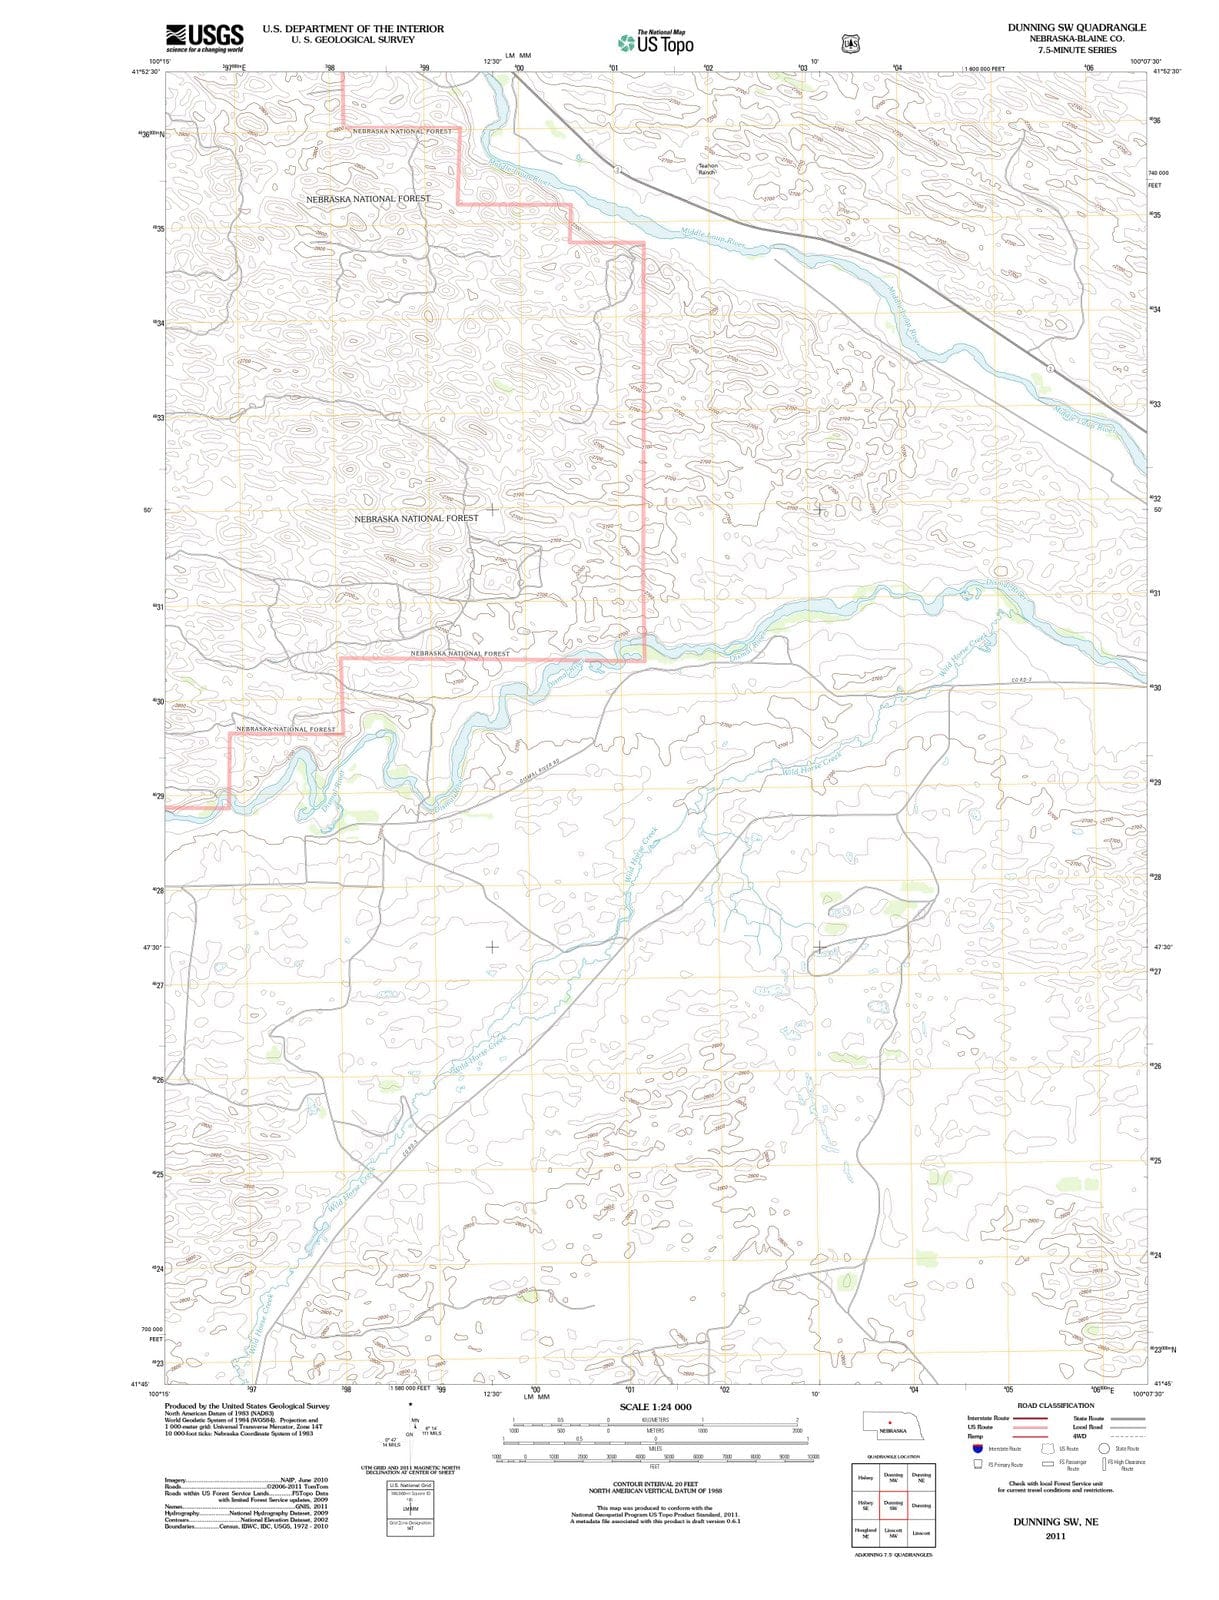 2011 Dunning, NE - Nebraska - USGS Topographic Map v2